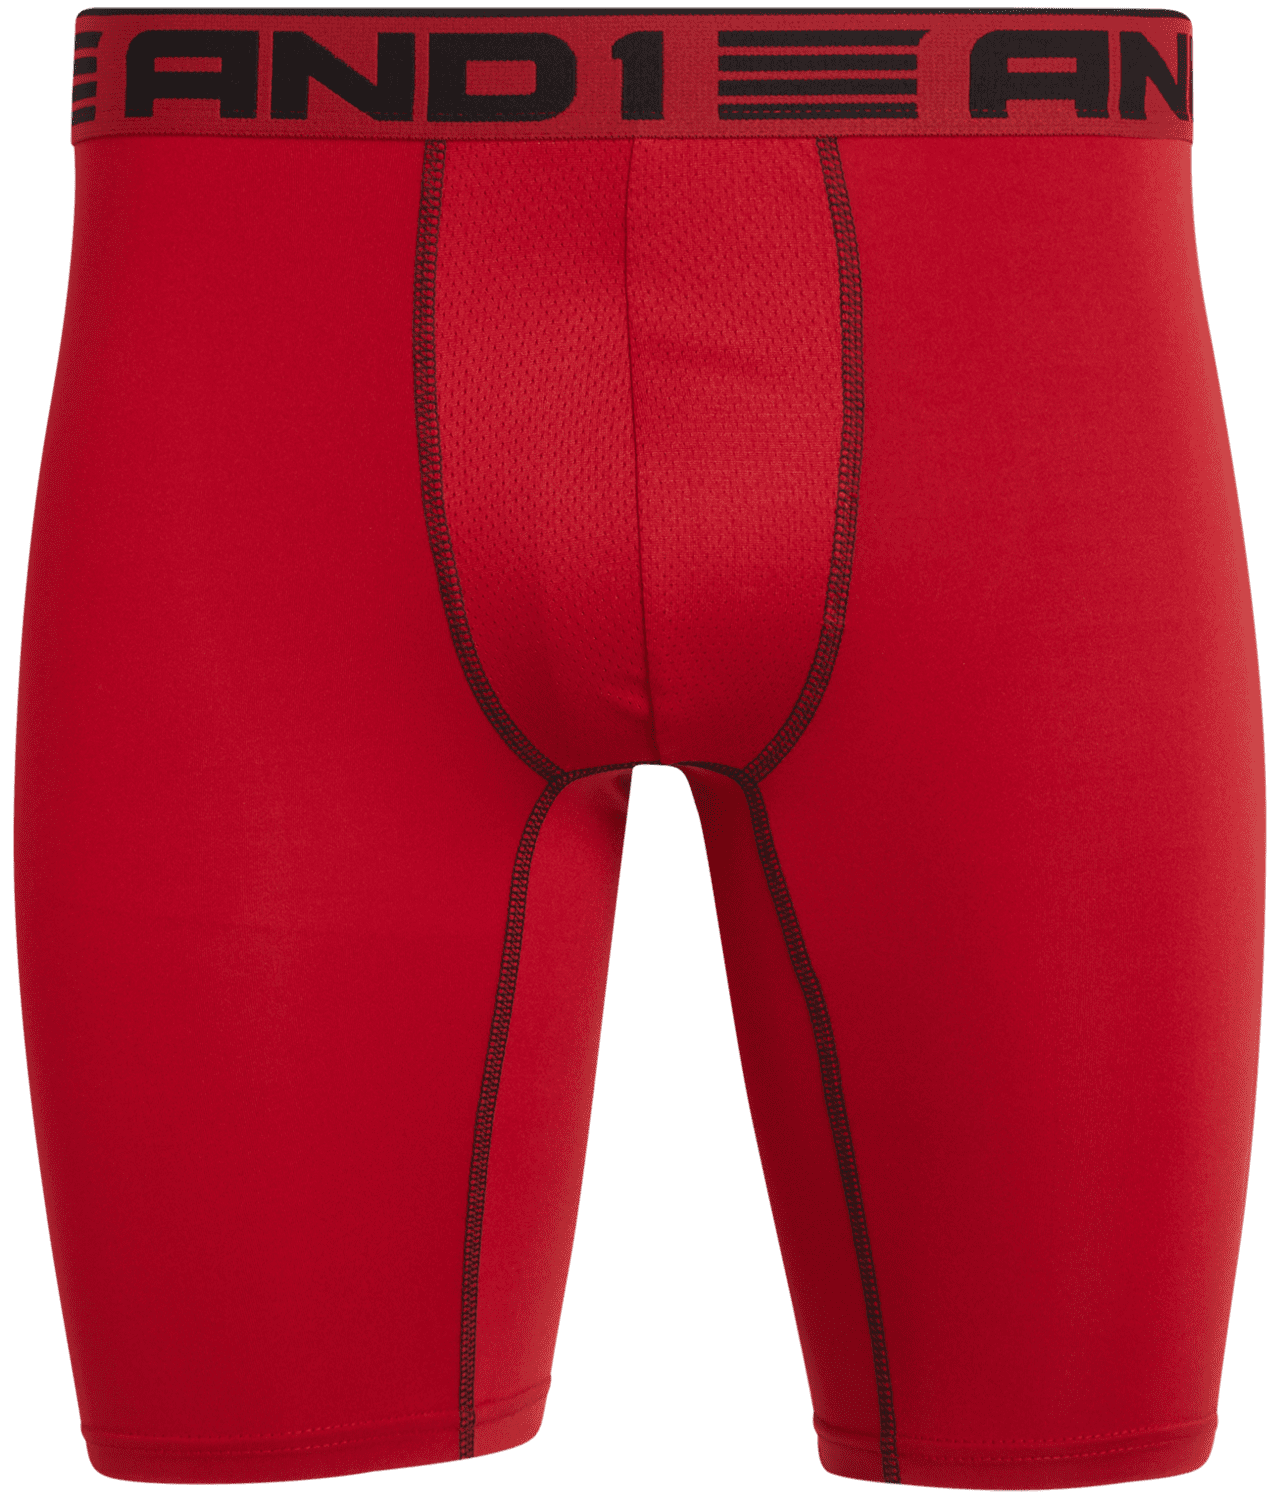 AND1 Men's Underwear Pro Platinum Long Leg Boxer Briefs, 6